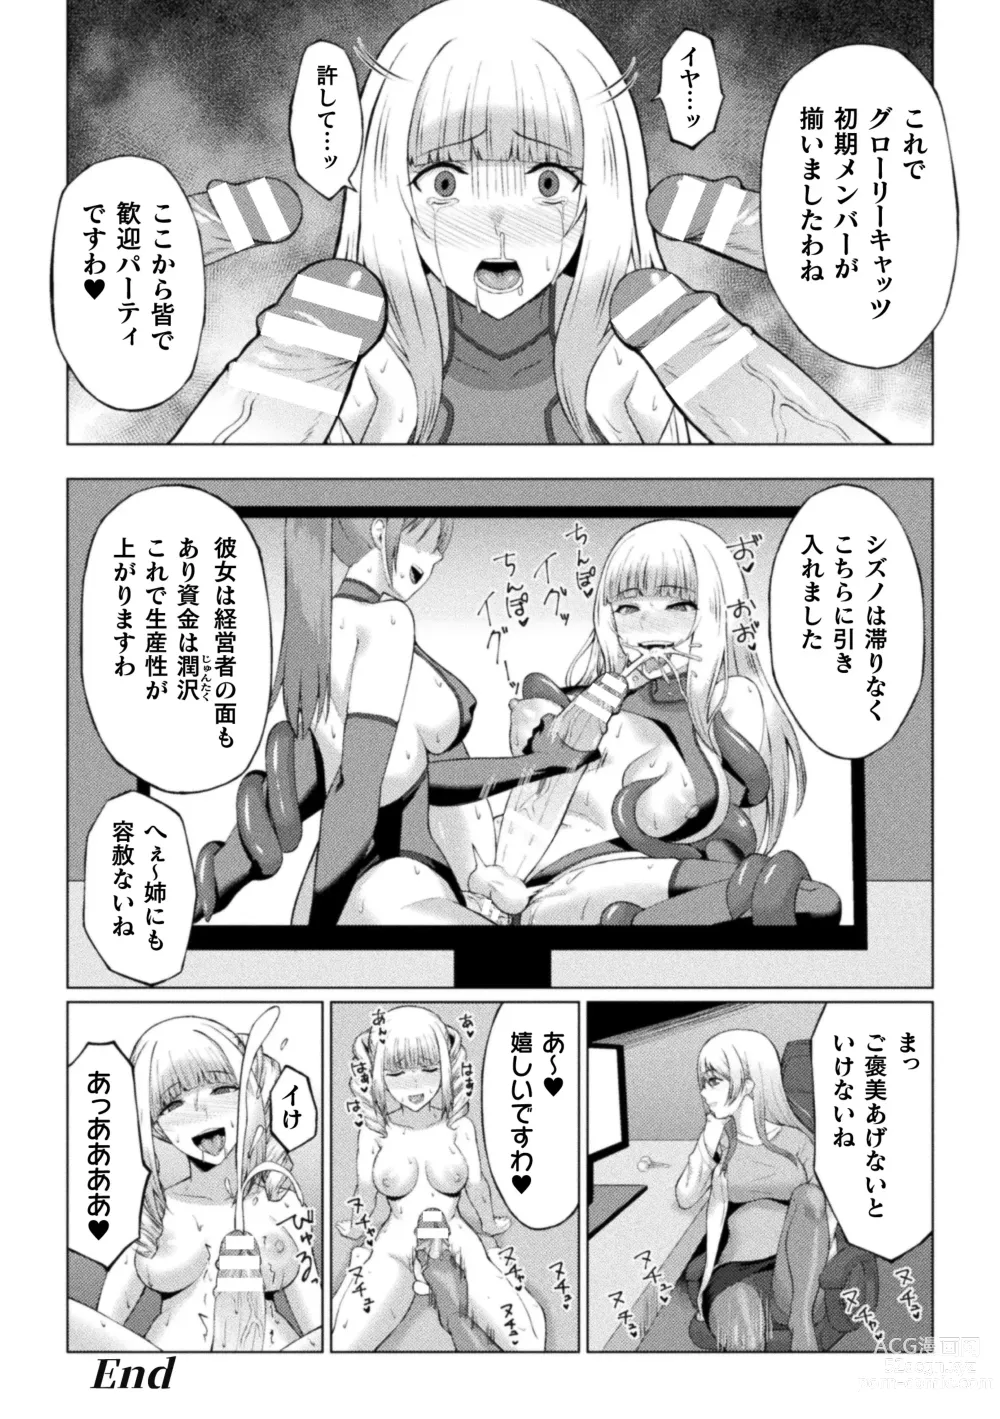 Page 180 of manga Shittsui no Otome-tachi